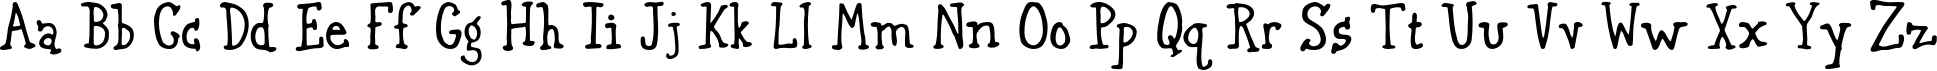 Пример написания английского алфавита шрифтом Gurnsey20